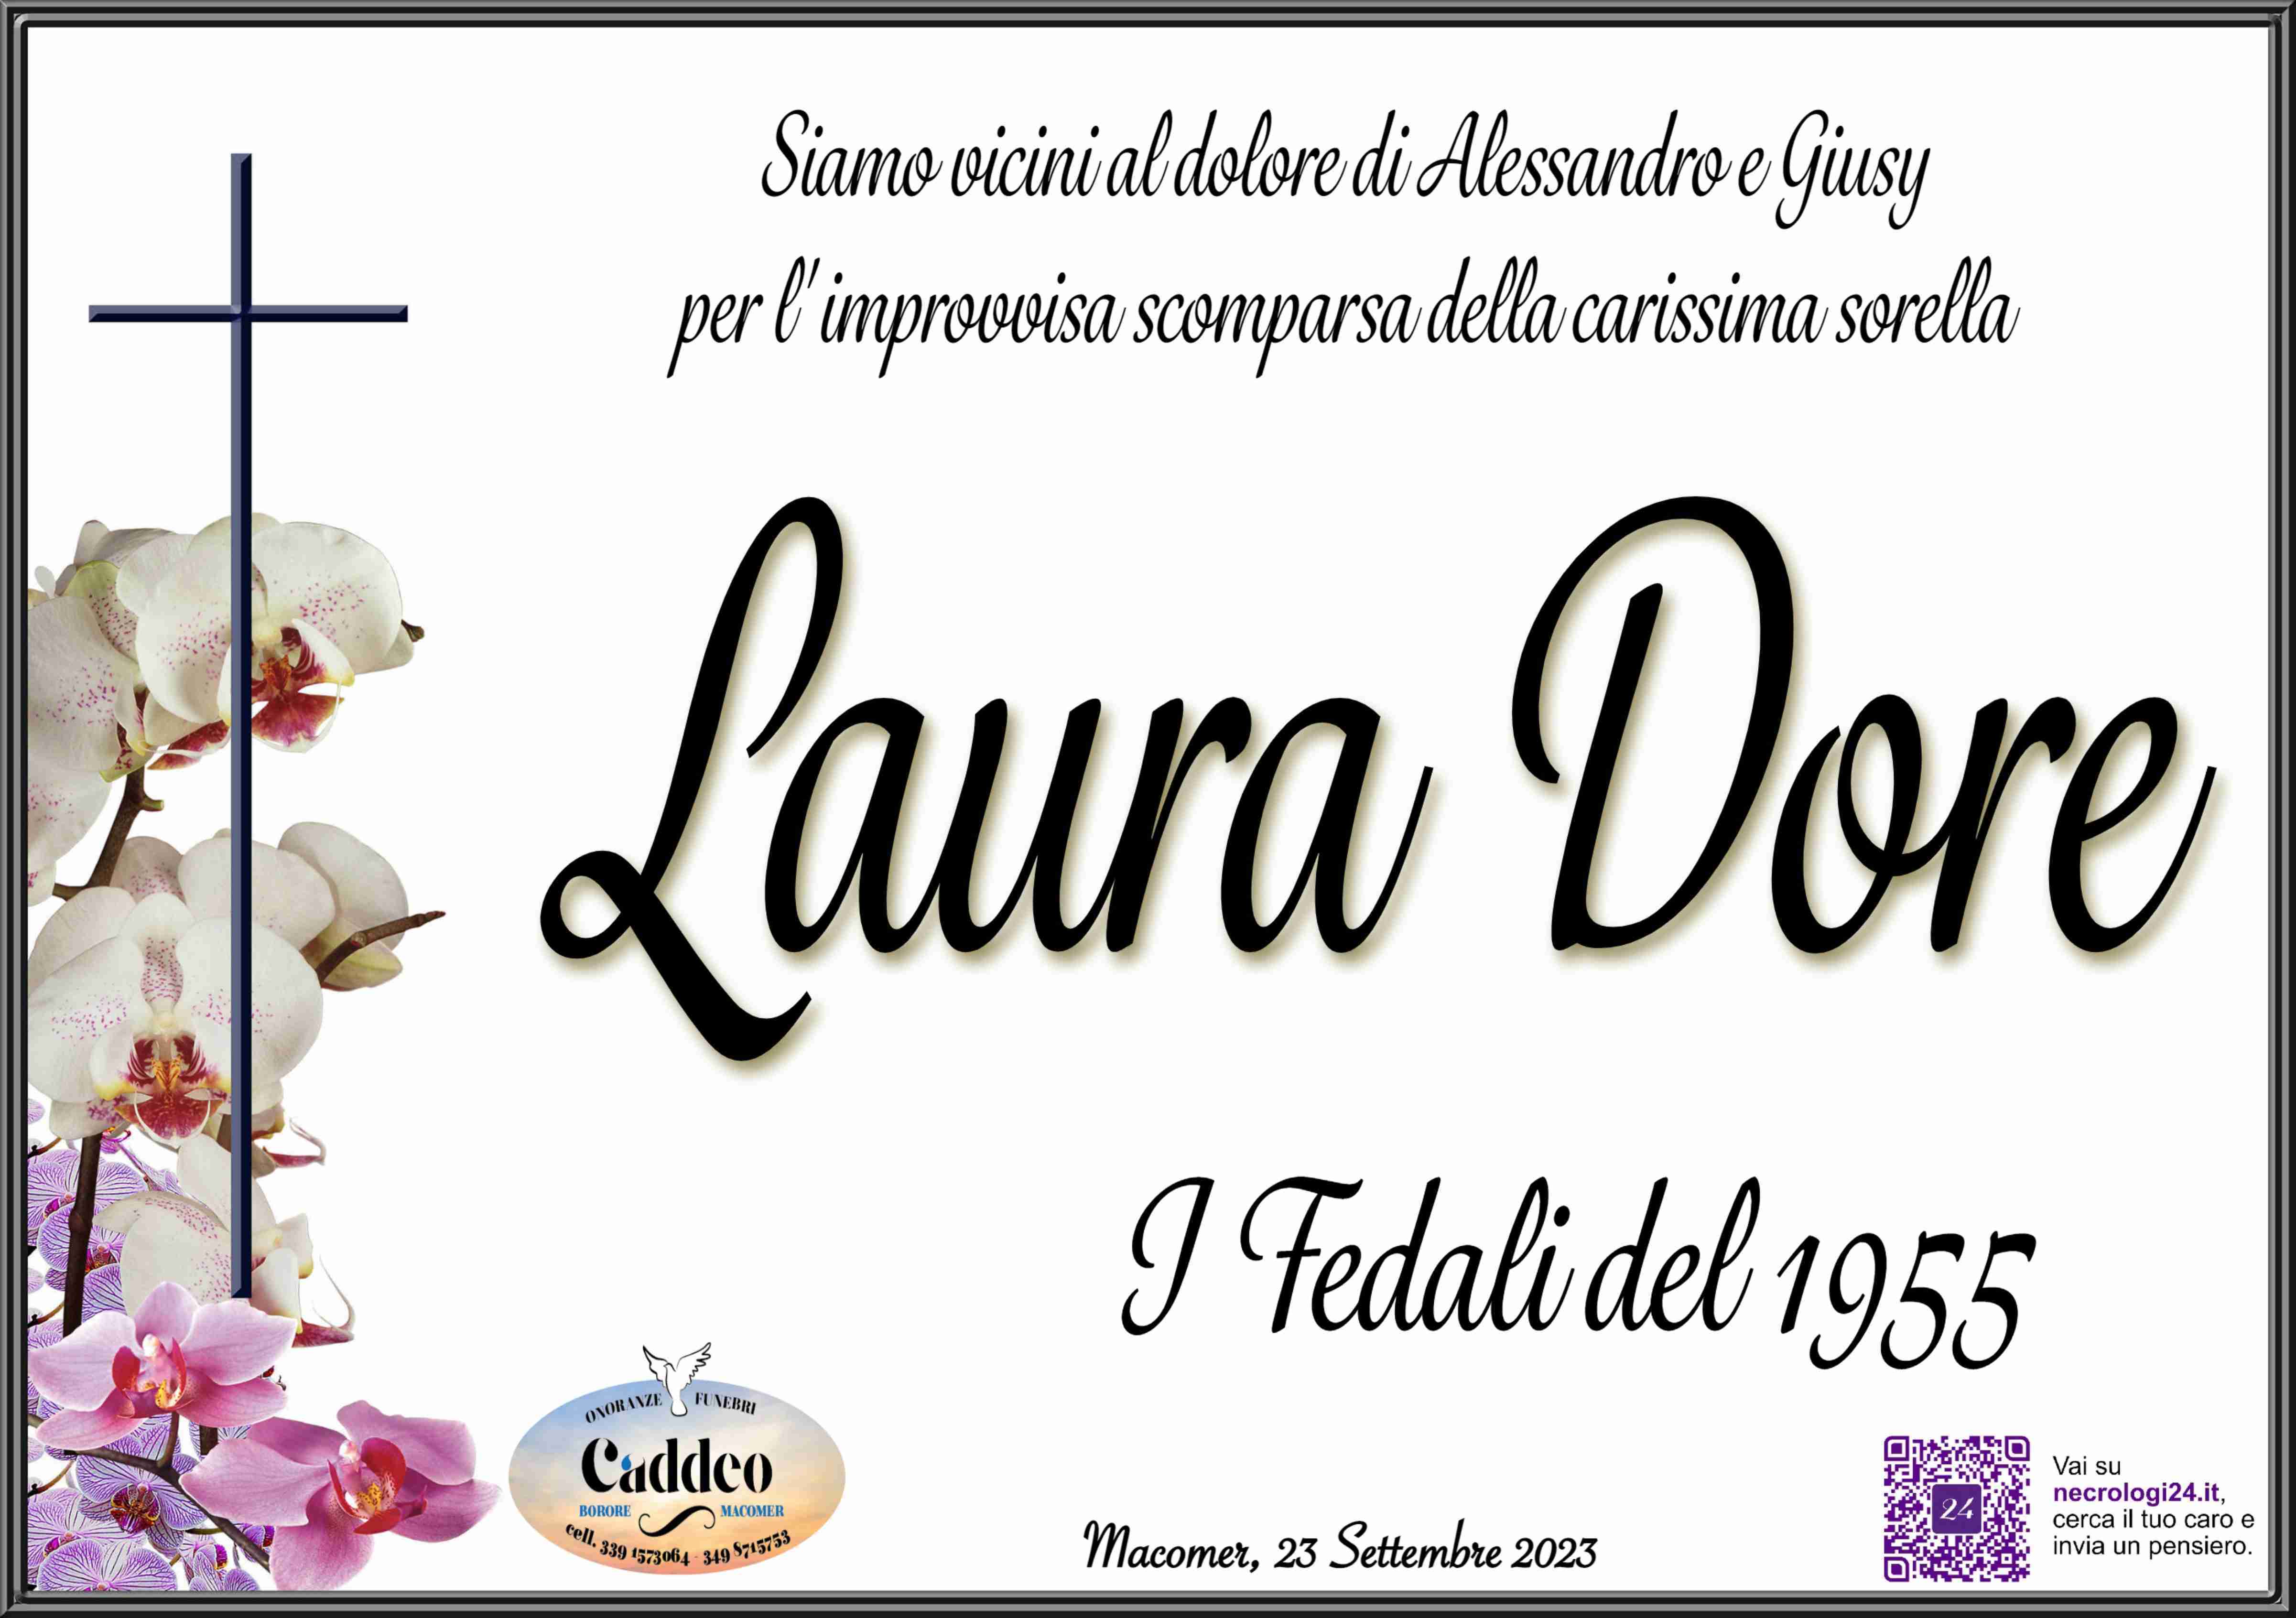 Laura Dore